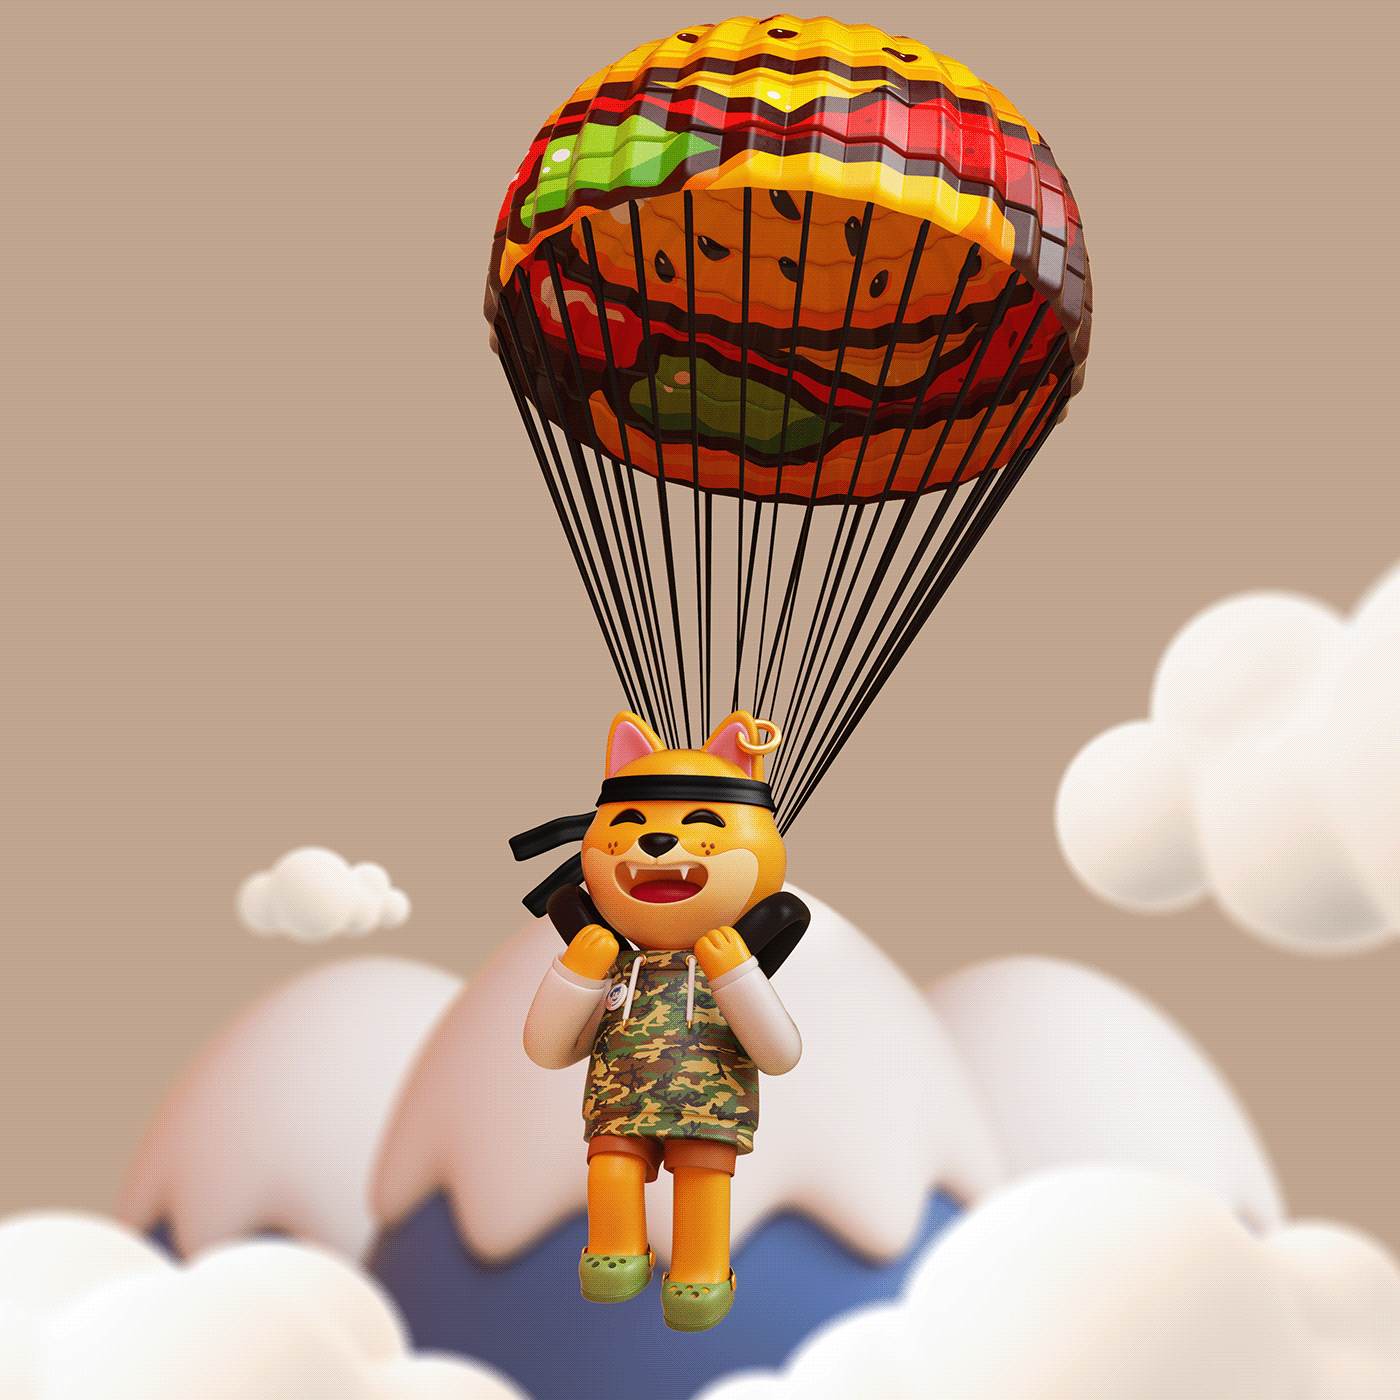 Image may contain: cartoon, hot air balloon and indoor